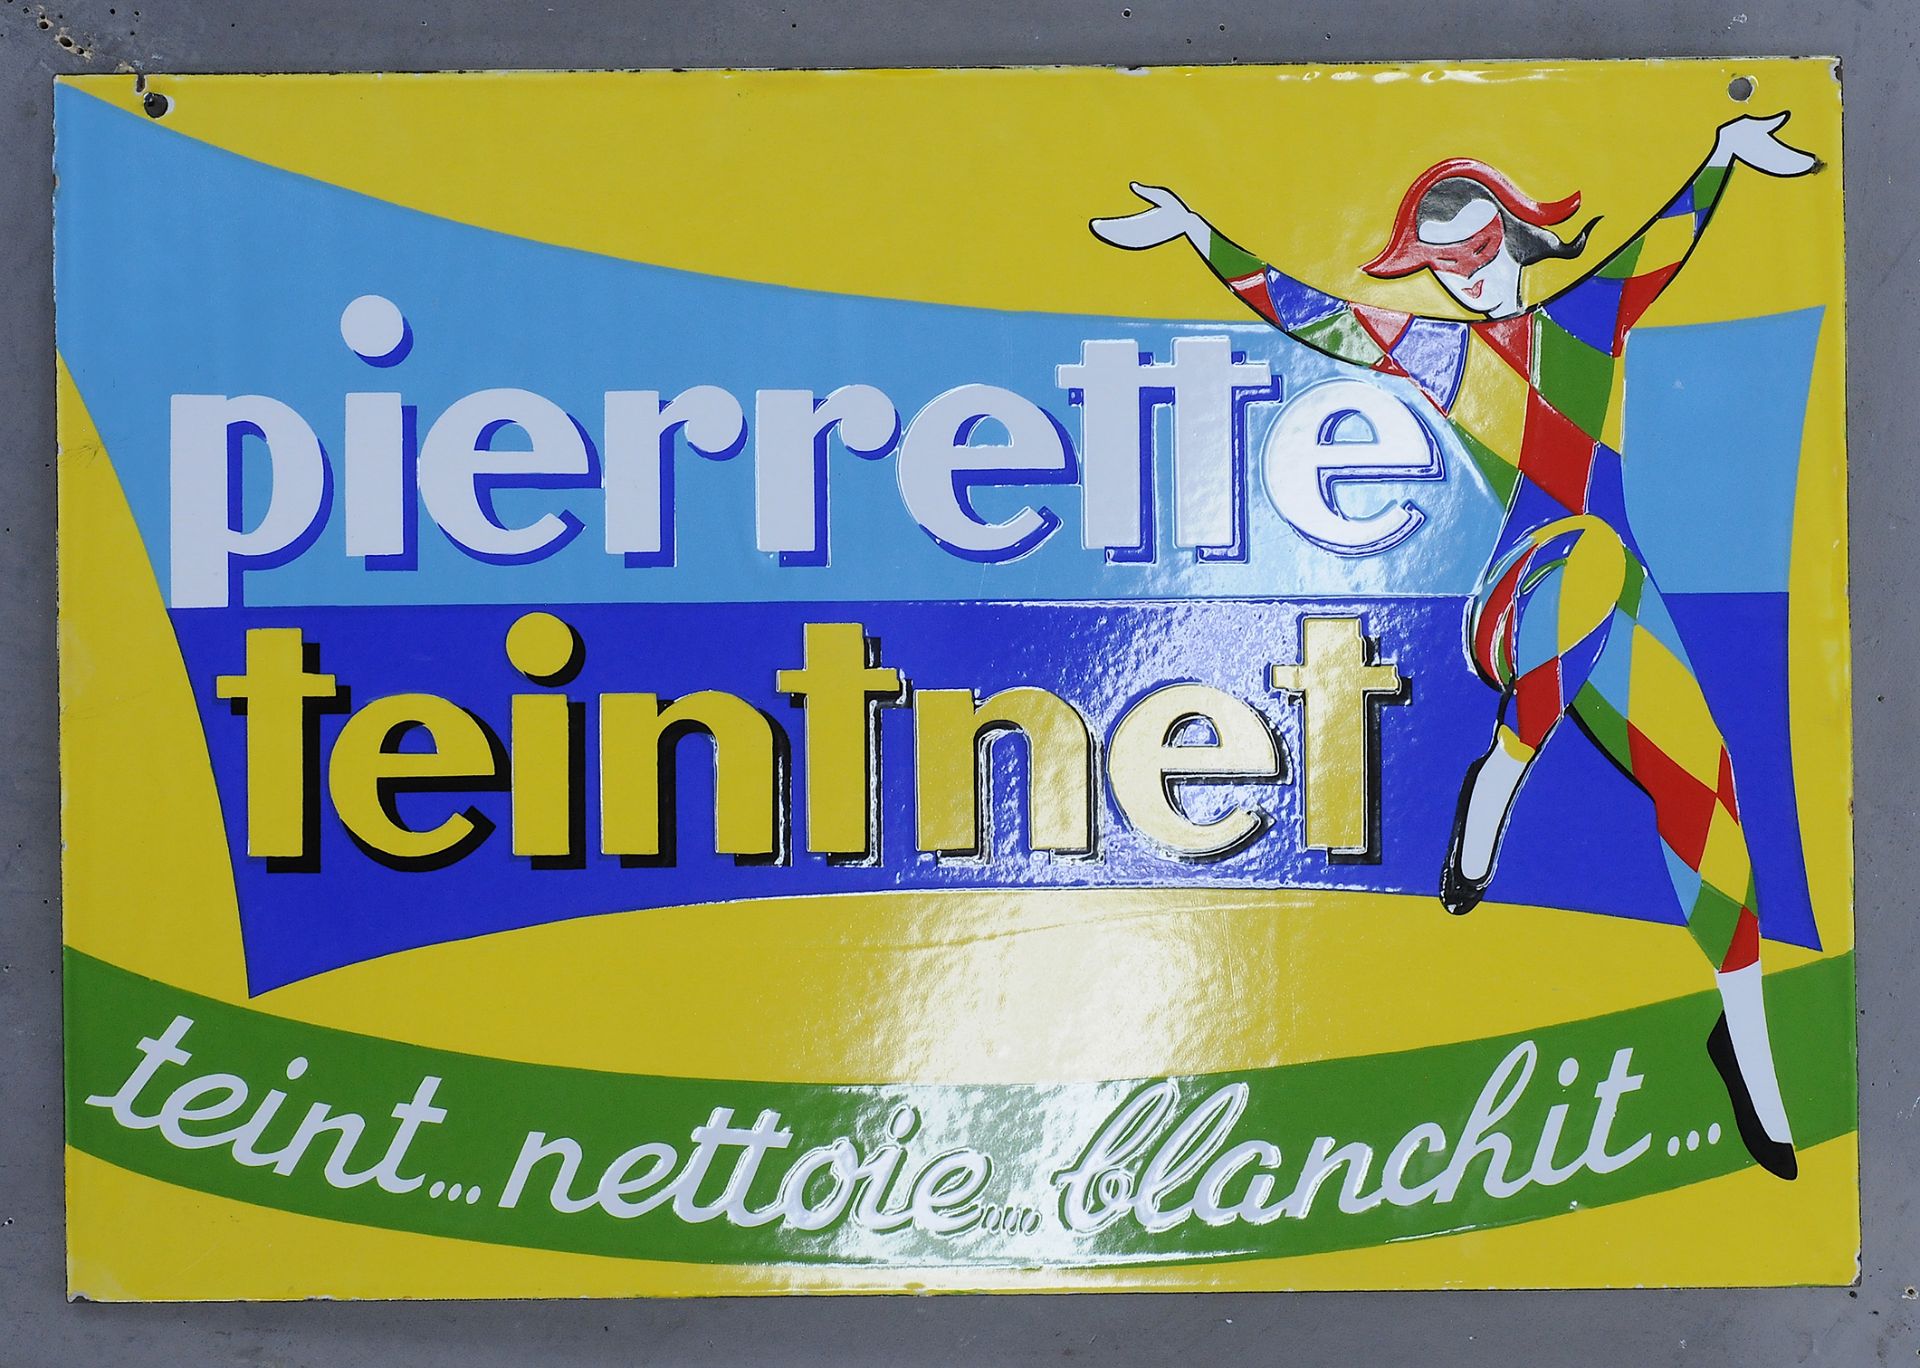 Pierrette teintnet - Image 4 of 4